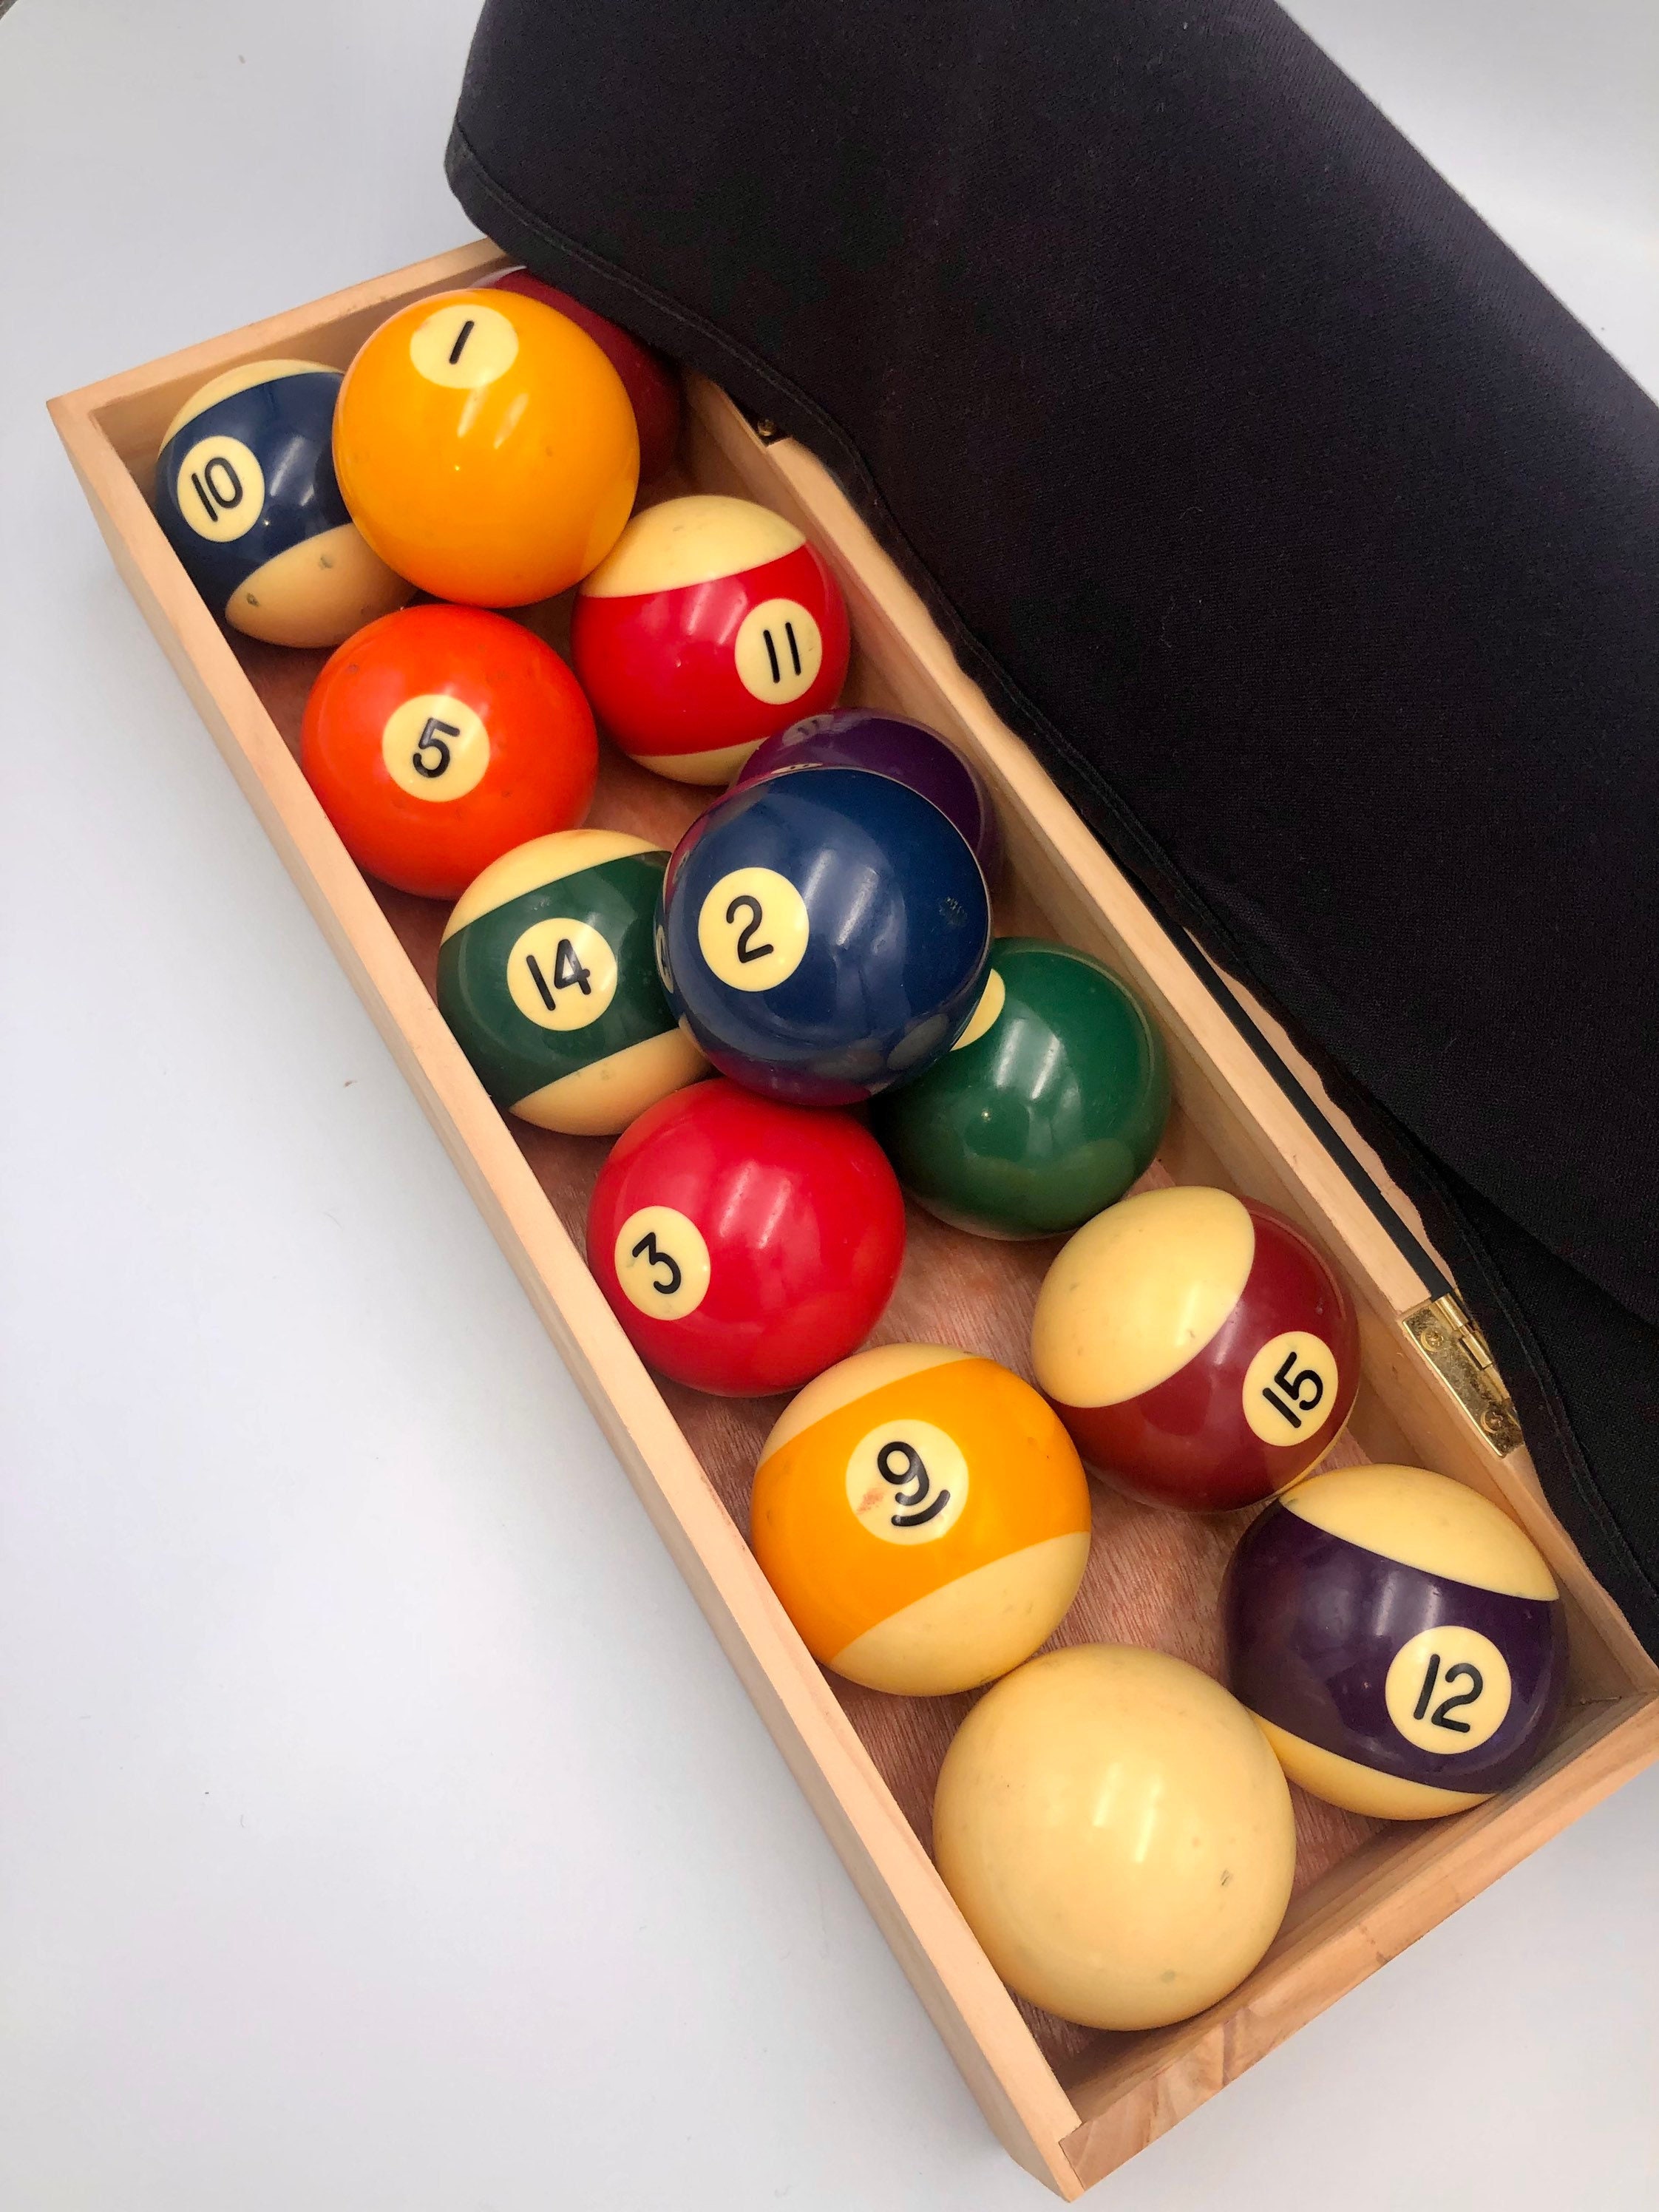 Juego de bolas de billar de 2-1/4 pulgadas, tamaño reglamentario, bolas de  mesa de billar para repuesto (16 bolas de resina)